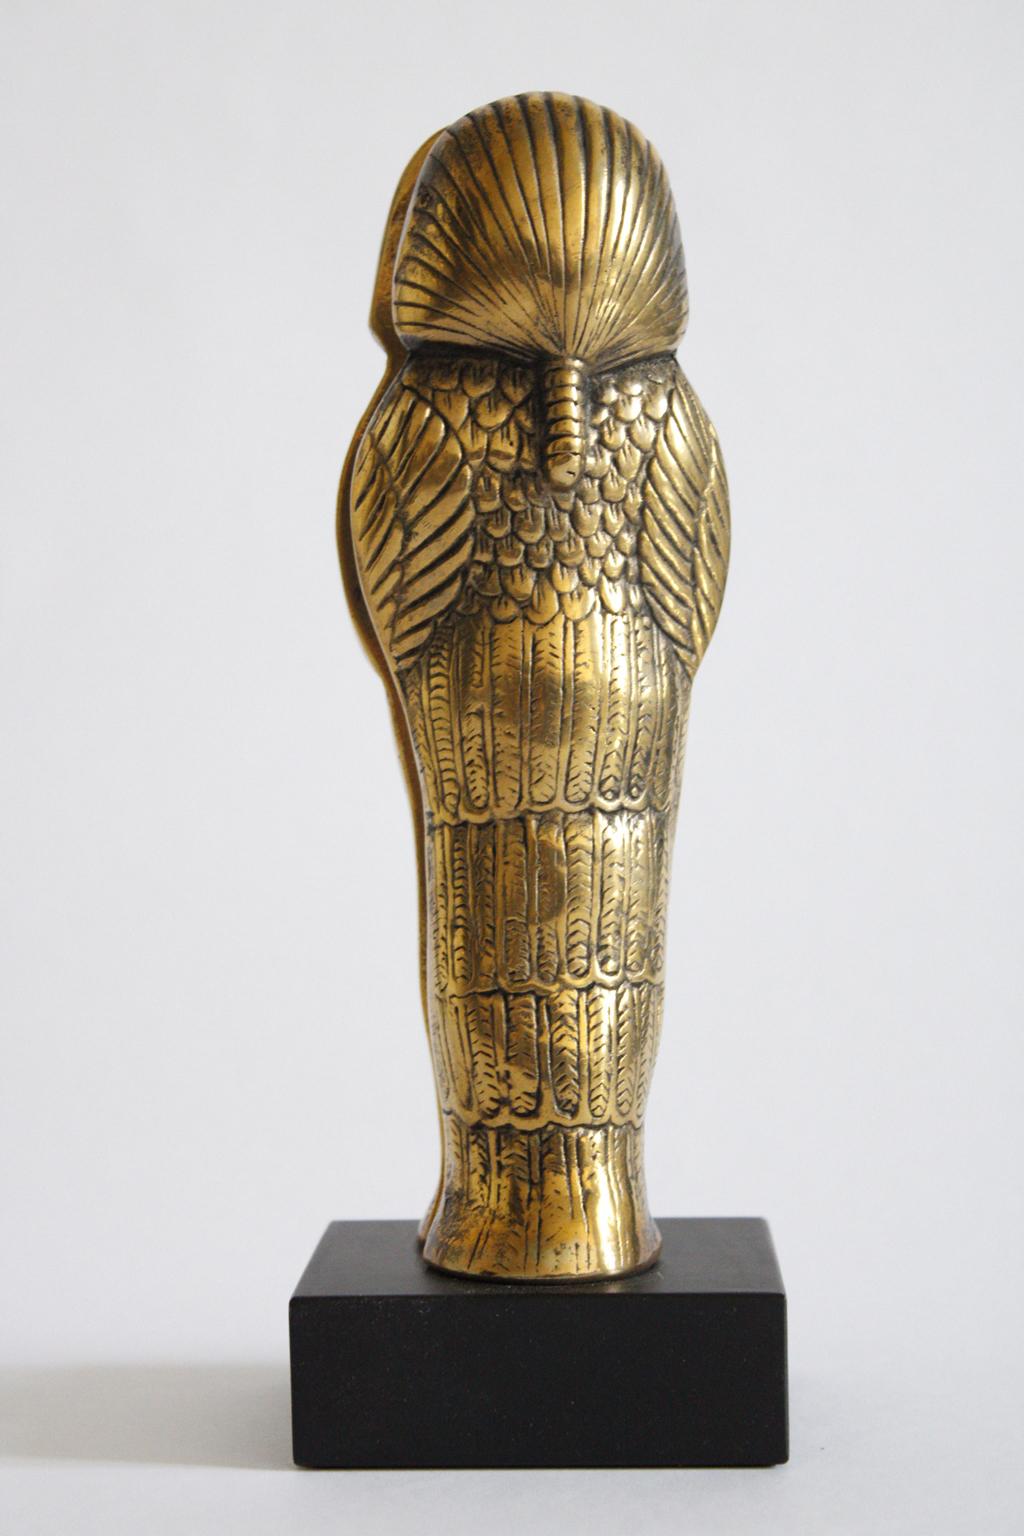 Il s'agit d'une intéressante sculpture en bronze, œuvre d'art multiple, signée par l'artiste italien Filippo Panseca. Titre Le secret du pharaon

Il s'agit d'un multiple d'une édition numérotée de 1.000 pièces. Les pièces ont été réalisées en 1990